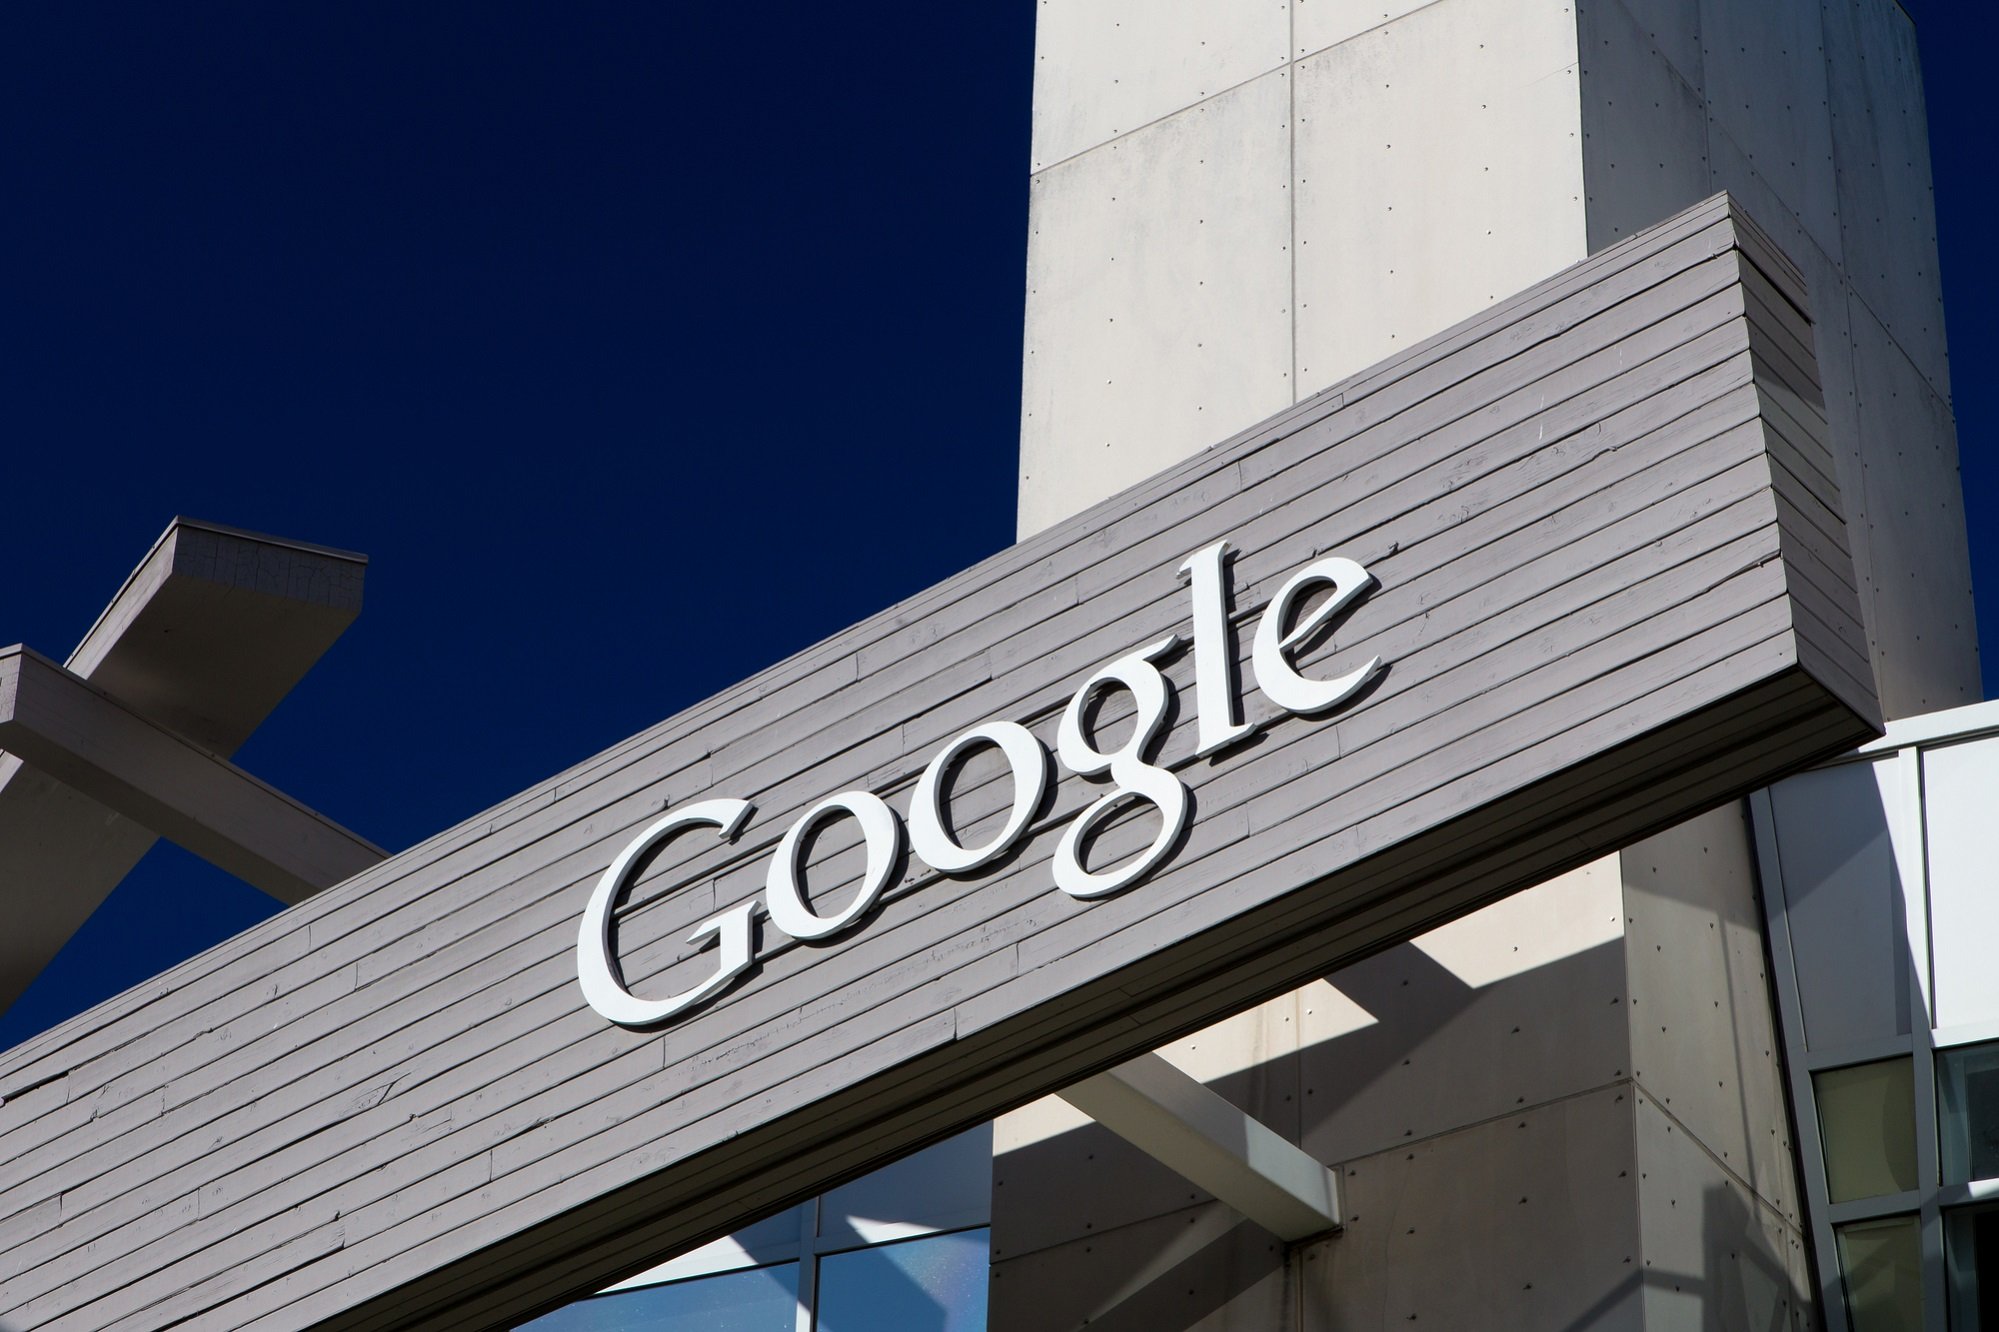 Google betalar 6,5 miljoner dollar till forskare som rapporterar sårbarhet 1